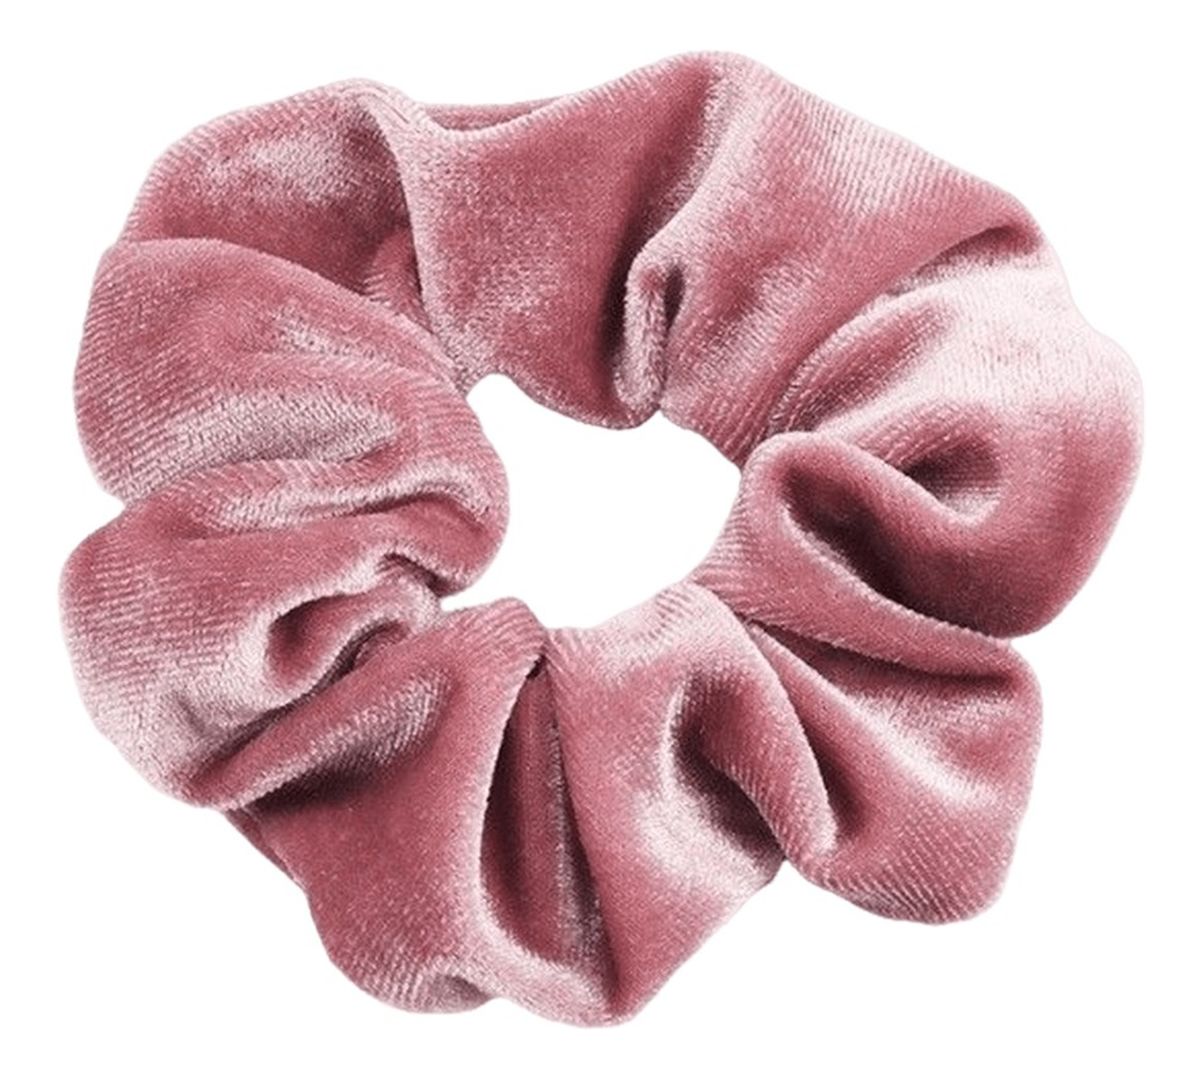 Gumka-frotka do włosów typu "Scrunchie" - różowa